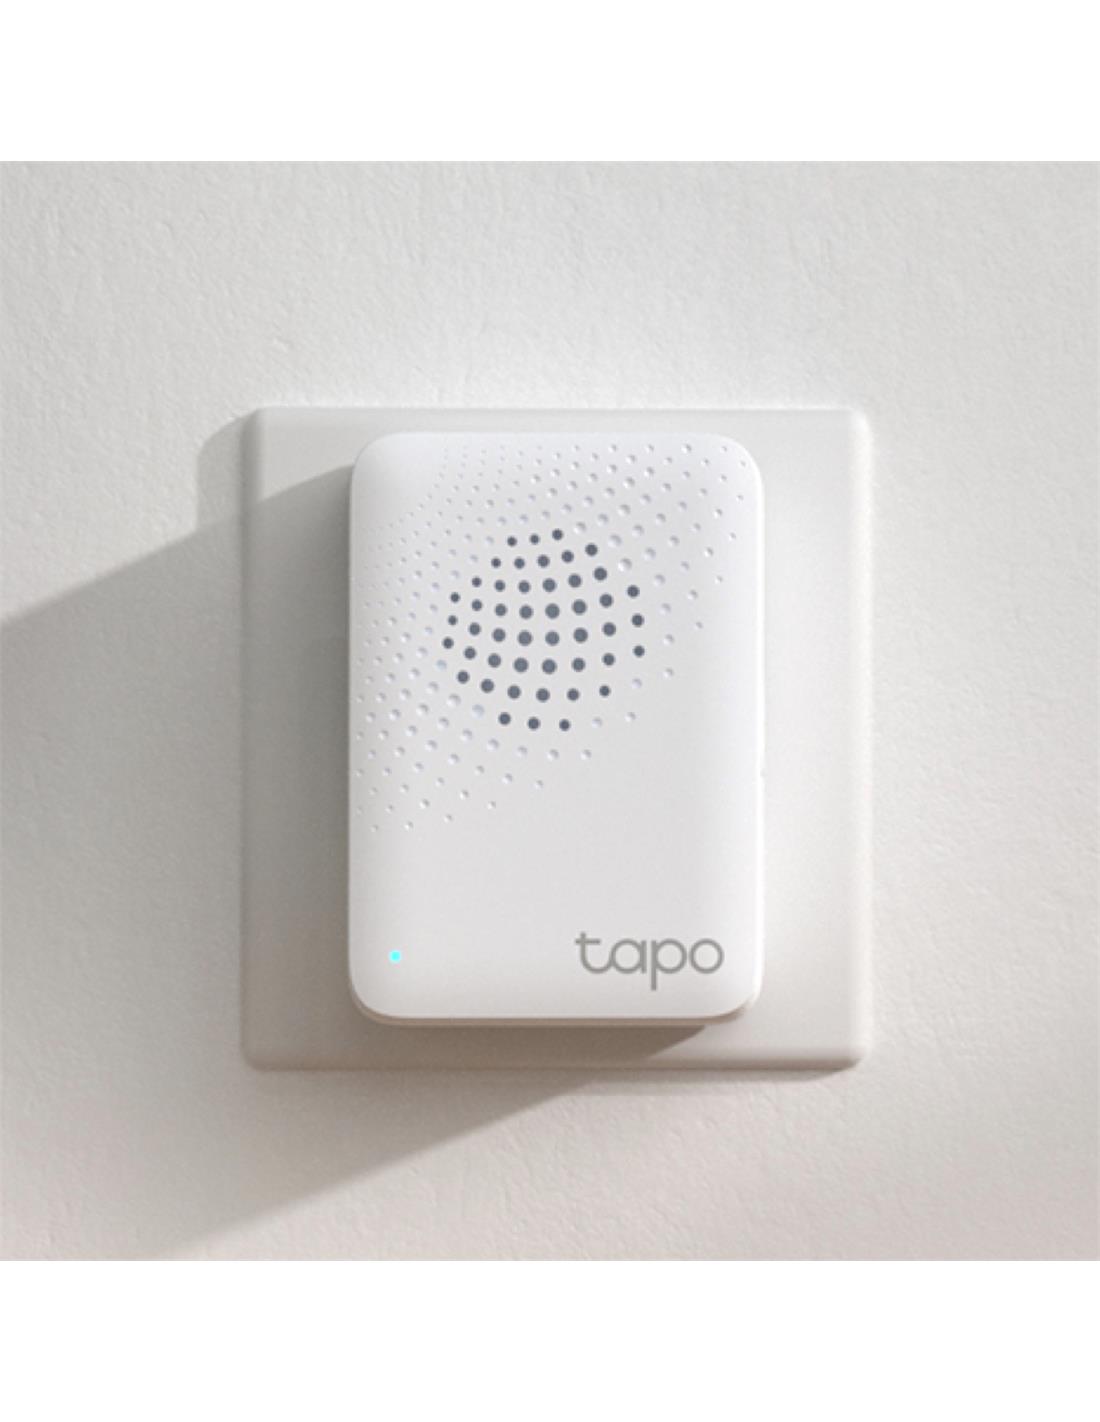 TP-LINK Venezuela on Instagram: Con el centro inteligente Tapo H100,  puedes activar distintas acciones o controlar dispositivos Tapo como  enchufes inteligentes, luces inteligentes e interruptores inteligentes  según la detección del sensor. ✓Conexiones